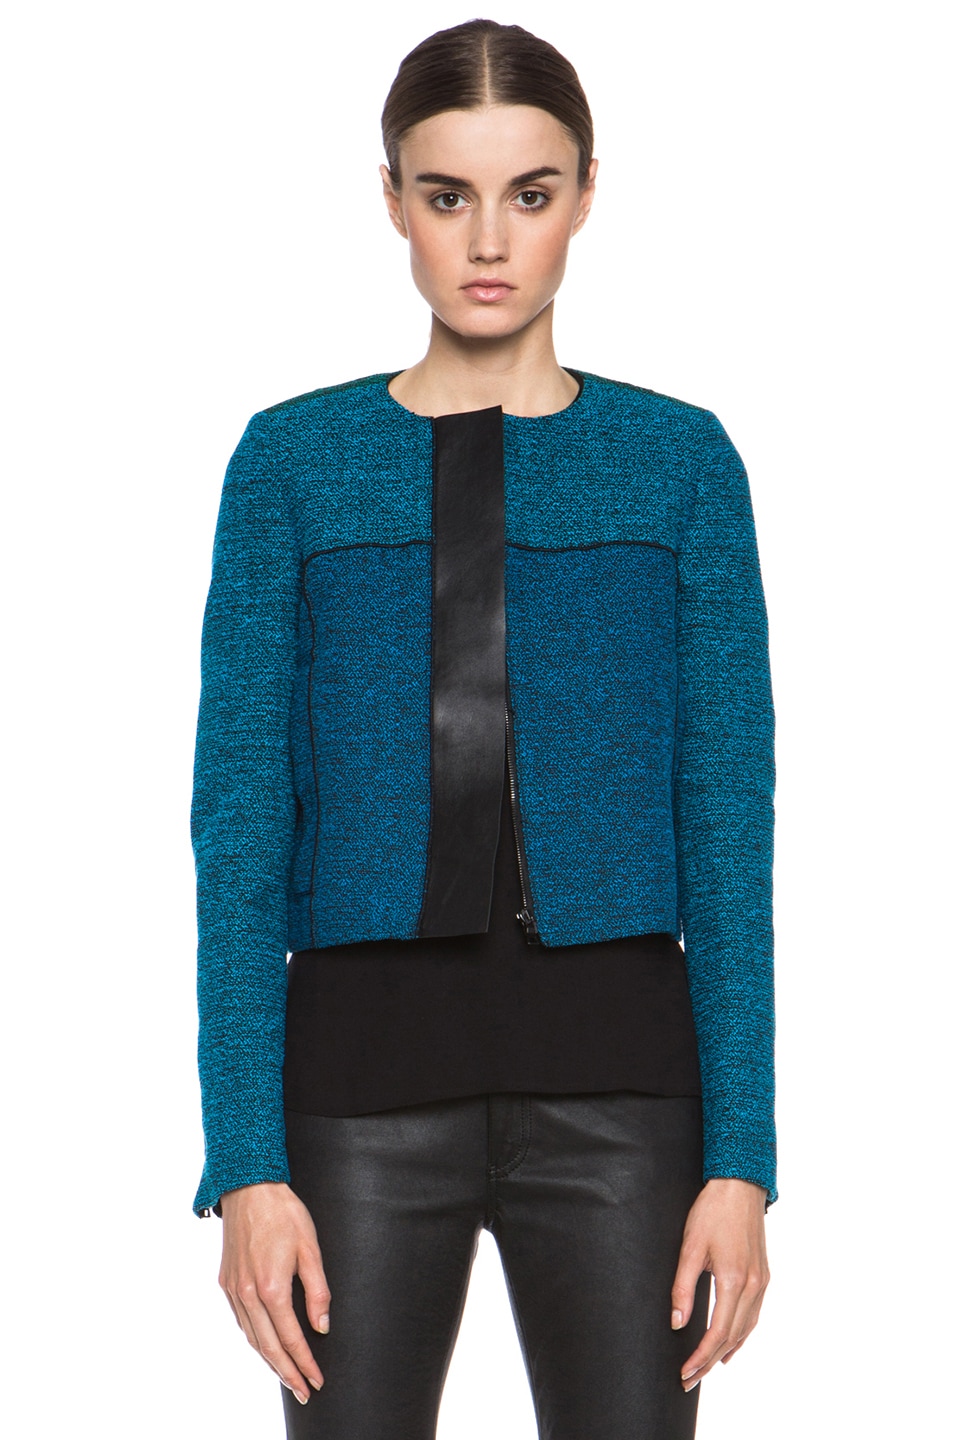 Proenza Schouler Tweed Jacket in Blue Combo | FWRD